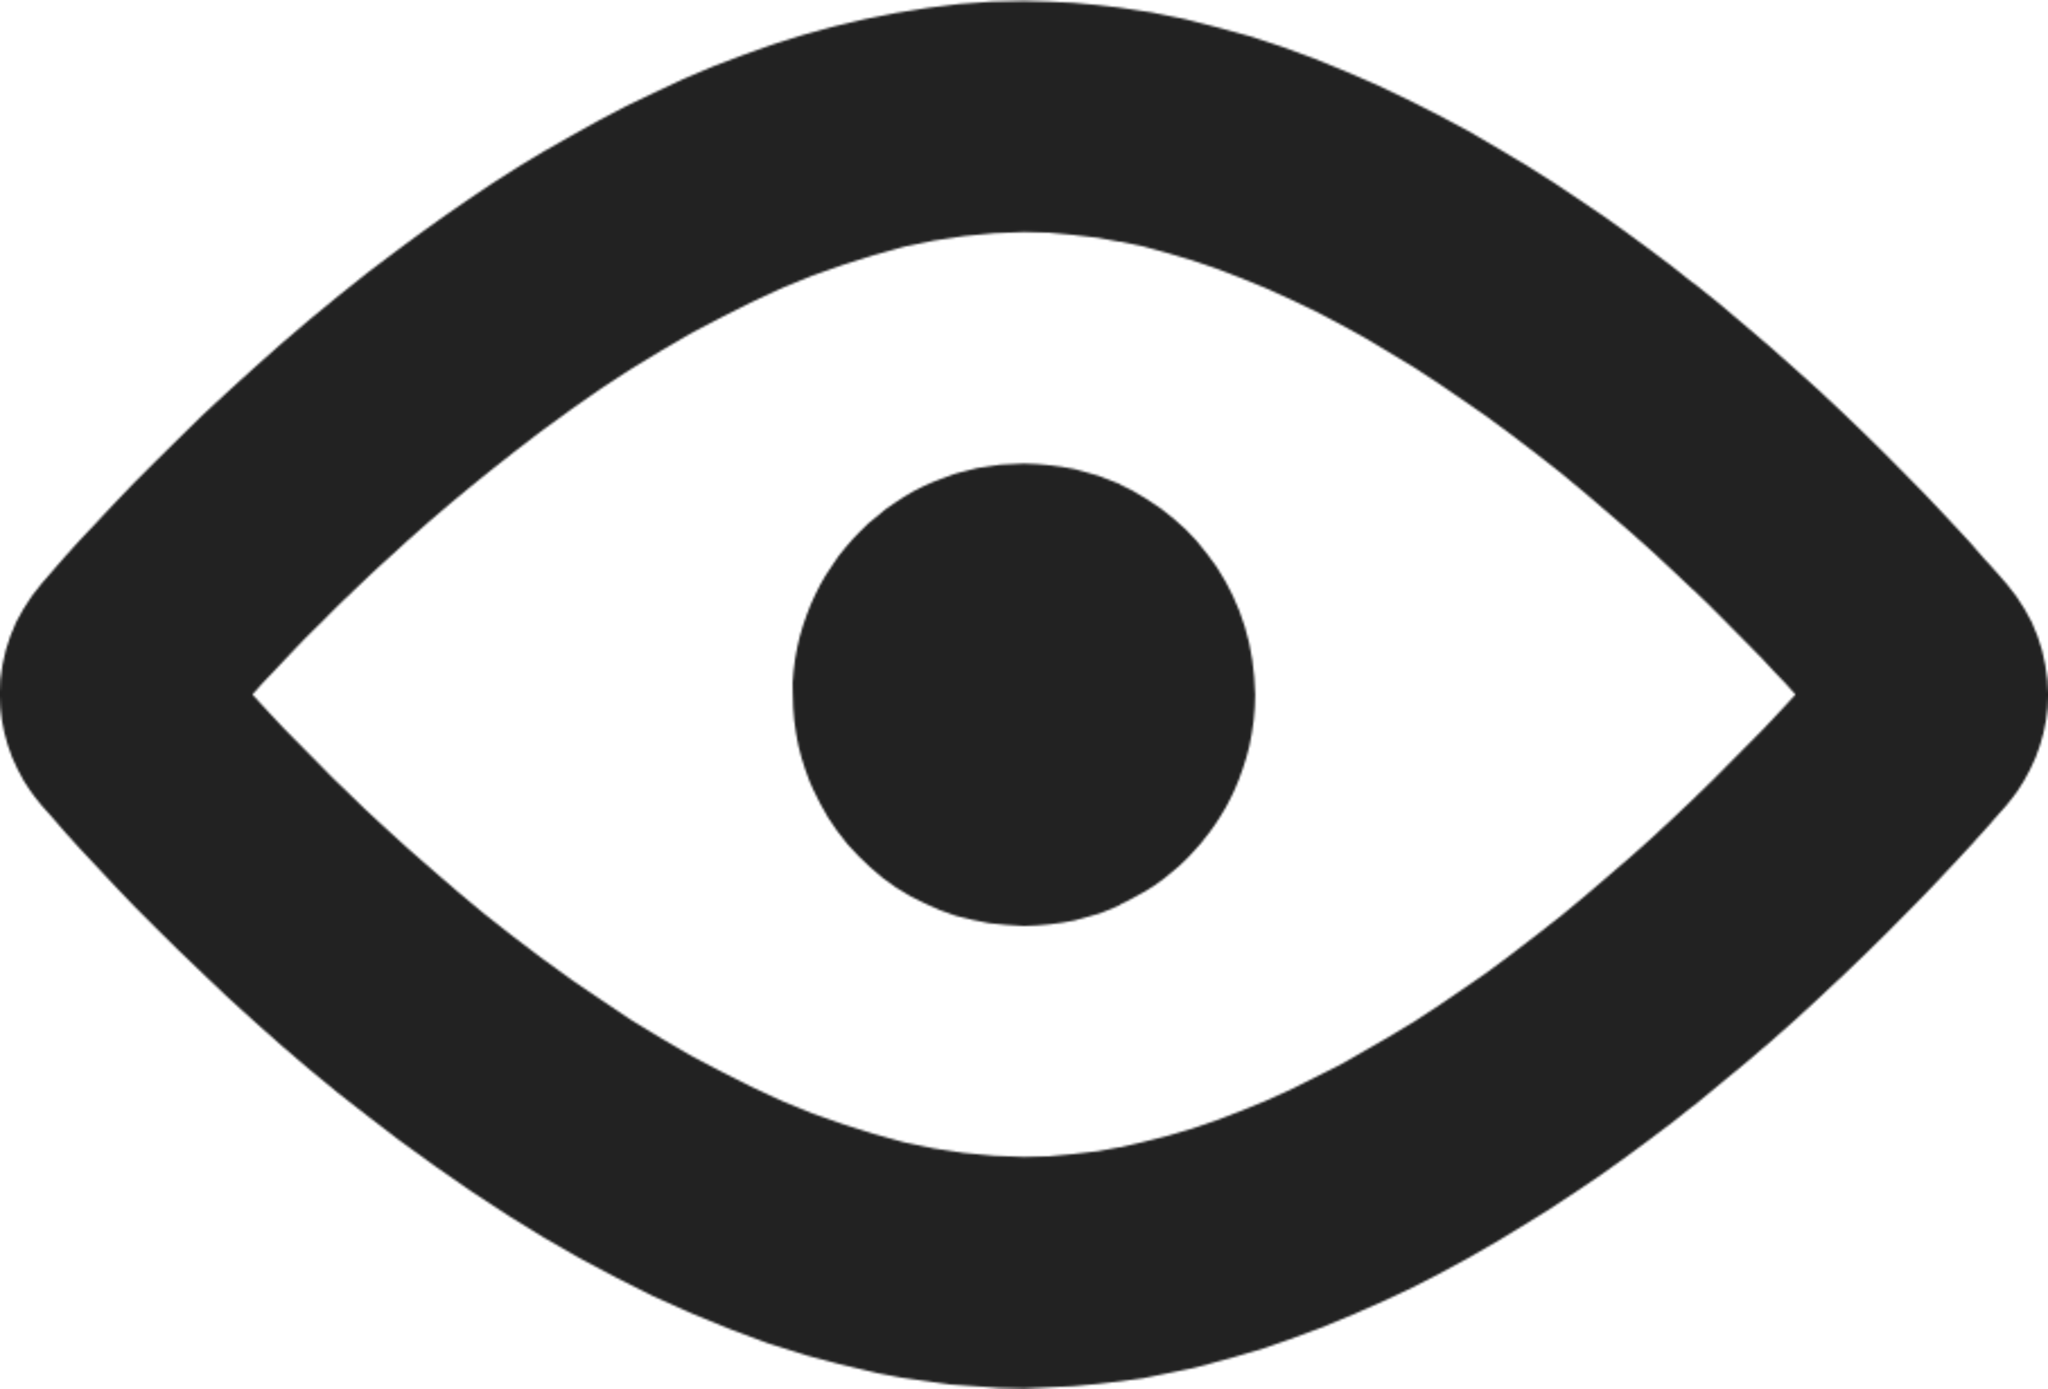 visible eye open icon